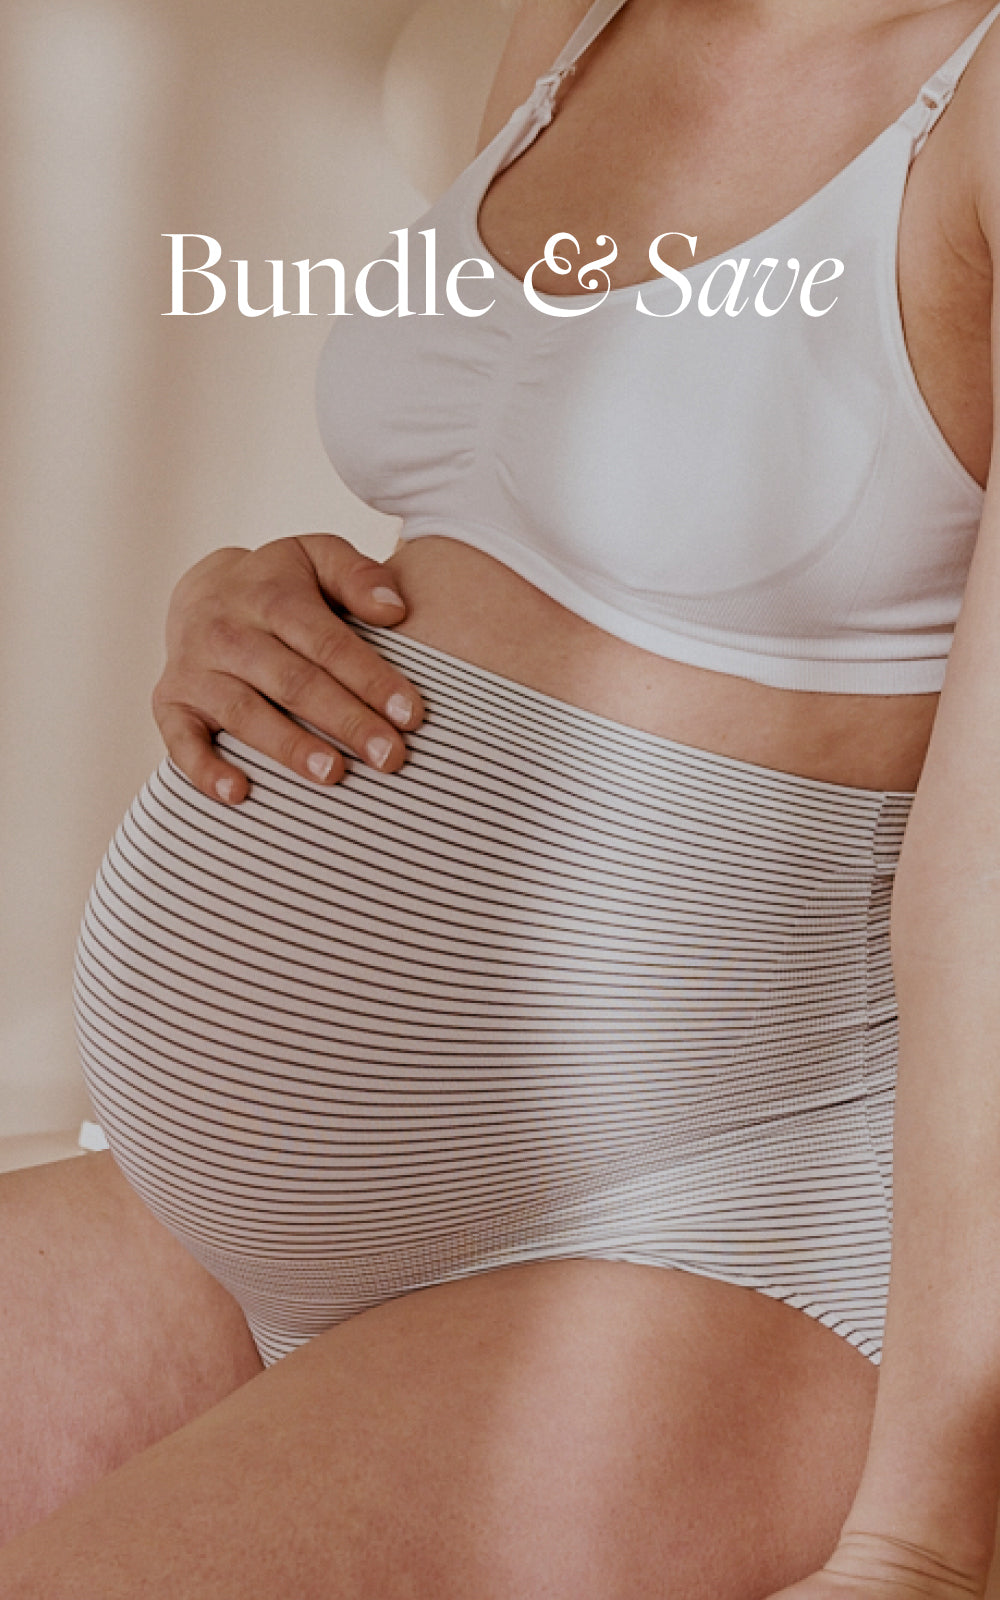 Maternity Underwear - Soft & Seamless Pregnancy Undies & More